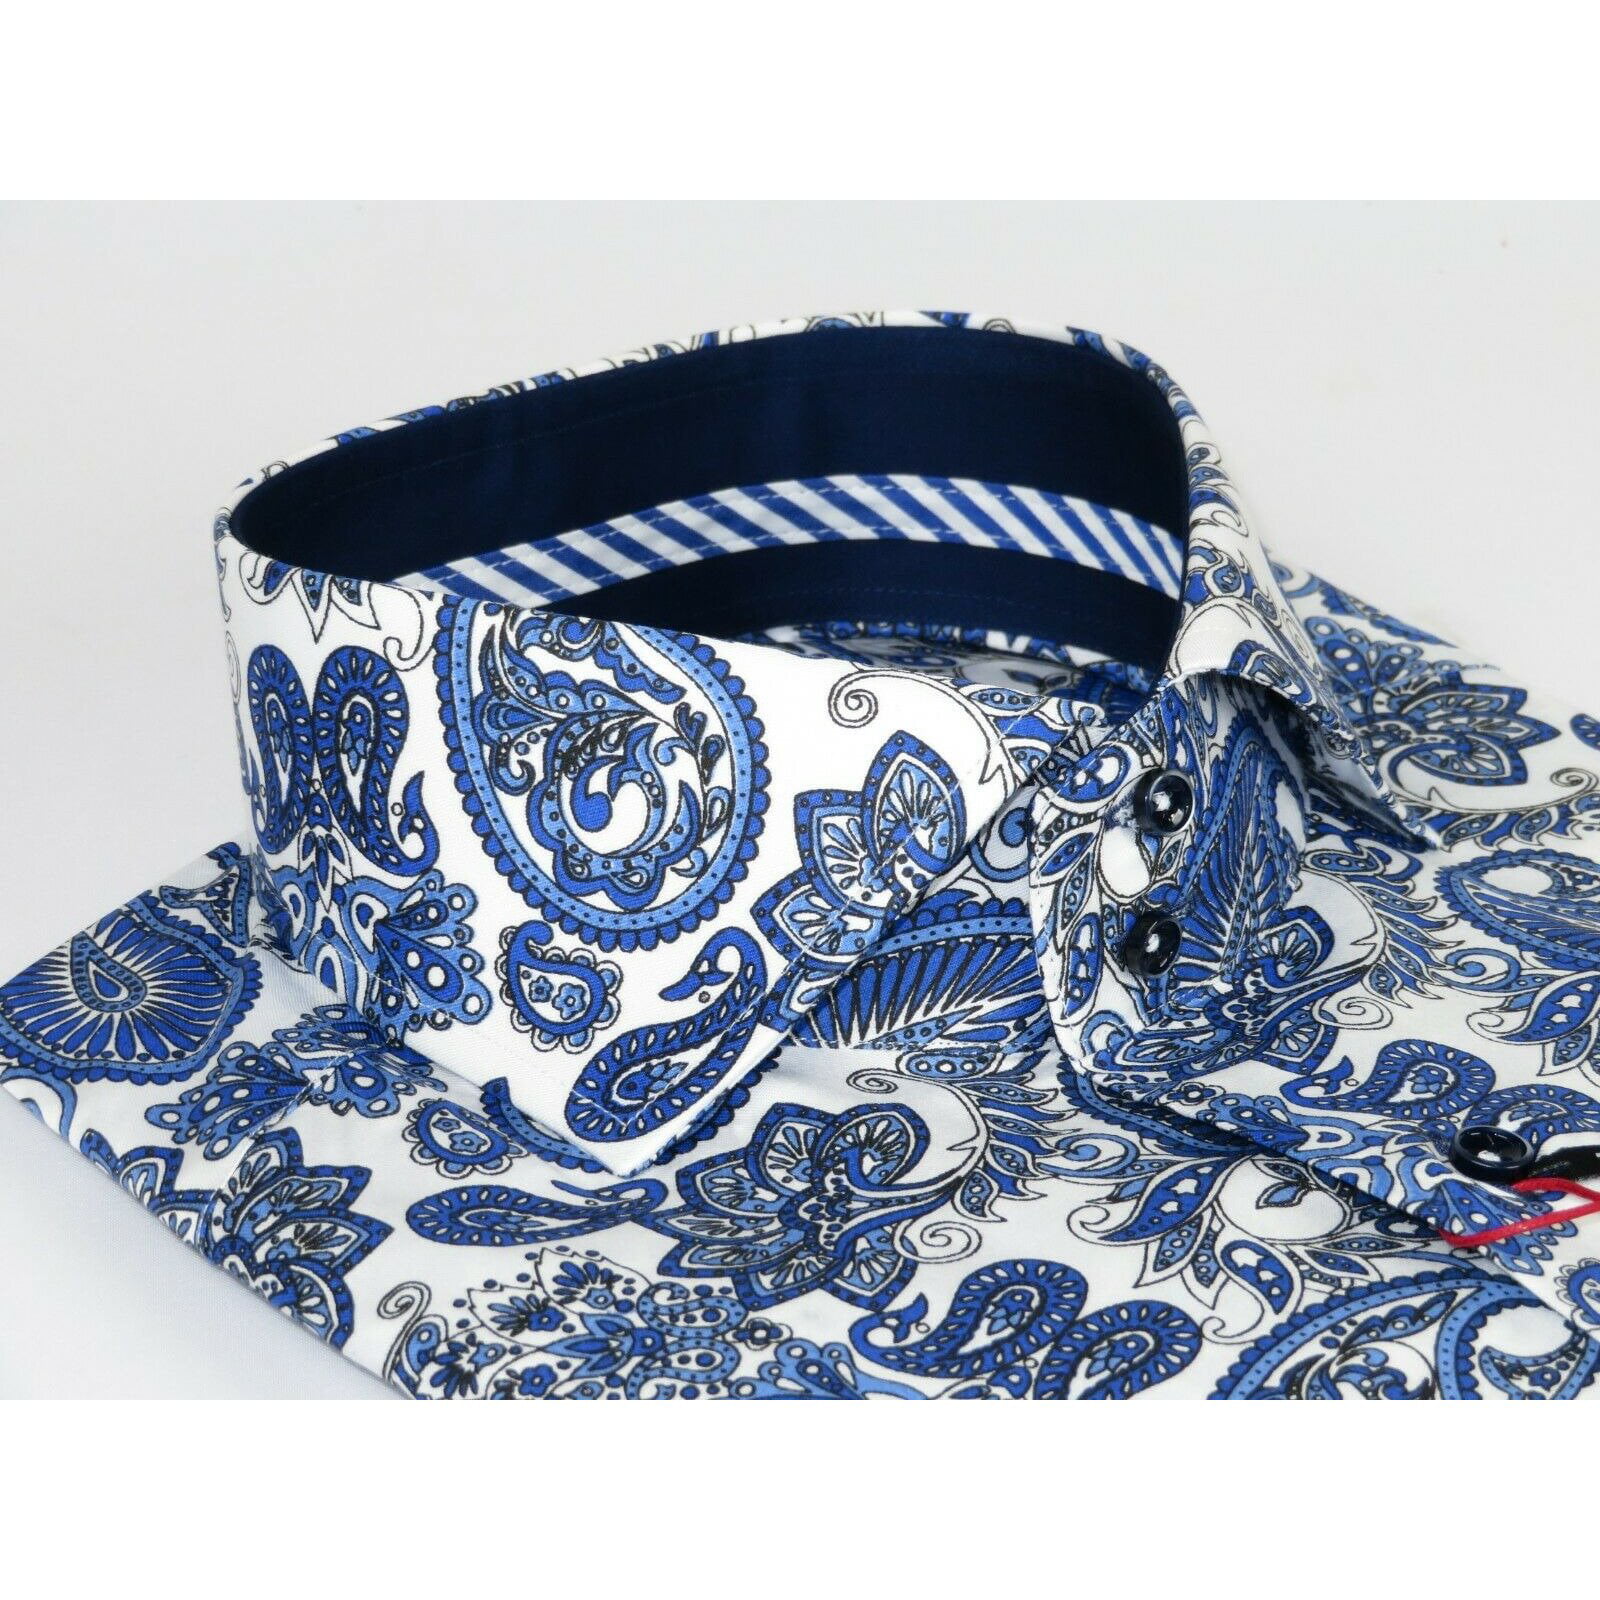 Men Axxess Egyptian Cotton wrinkle resistant Shirt European 319-04 Blue Paisley 